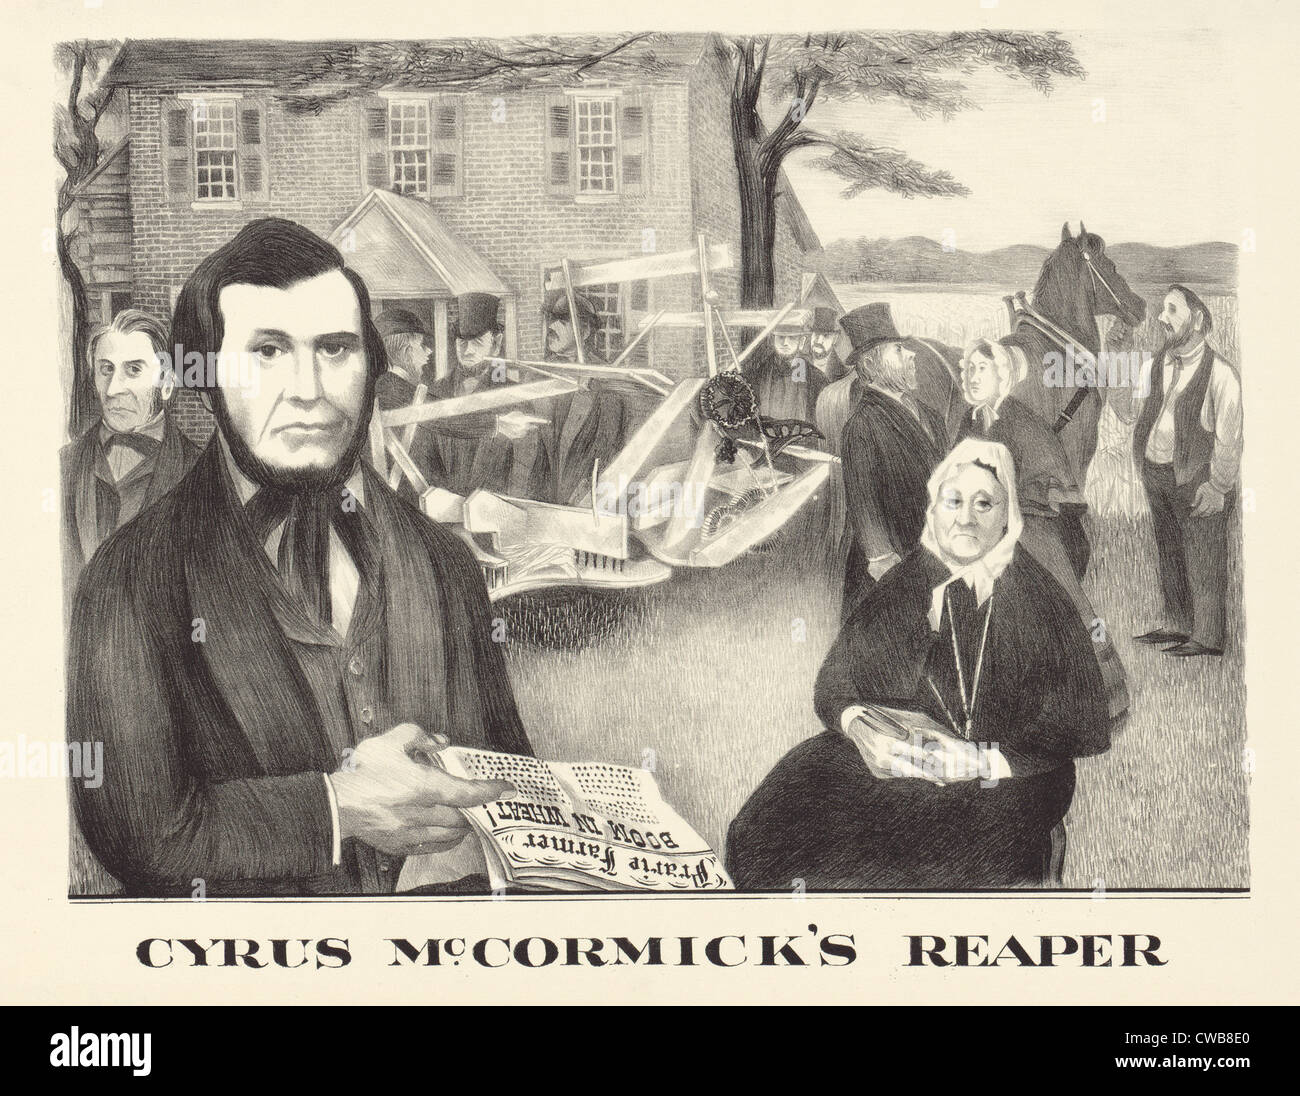 Cyrus McCormick's reaper. N'illustration de Cyrus McCormick et la moissonneuse mécanique qu'il a inventé. Lithographie de 1930 Banque D'Images